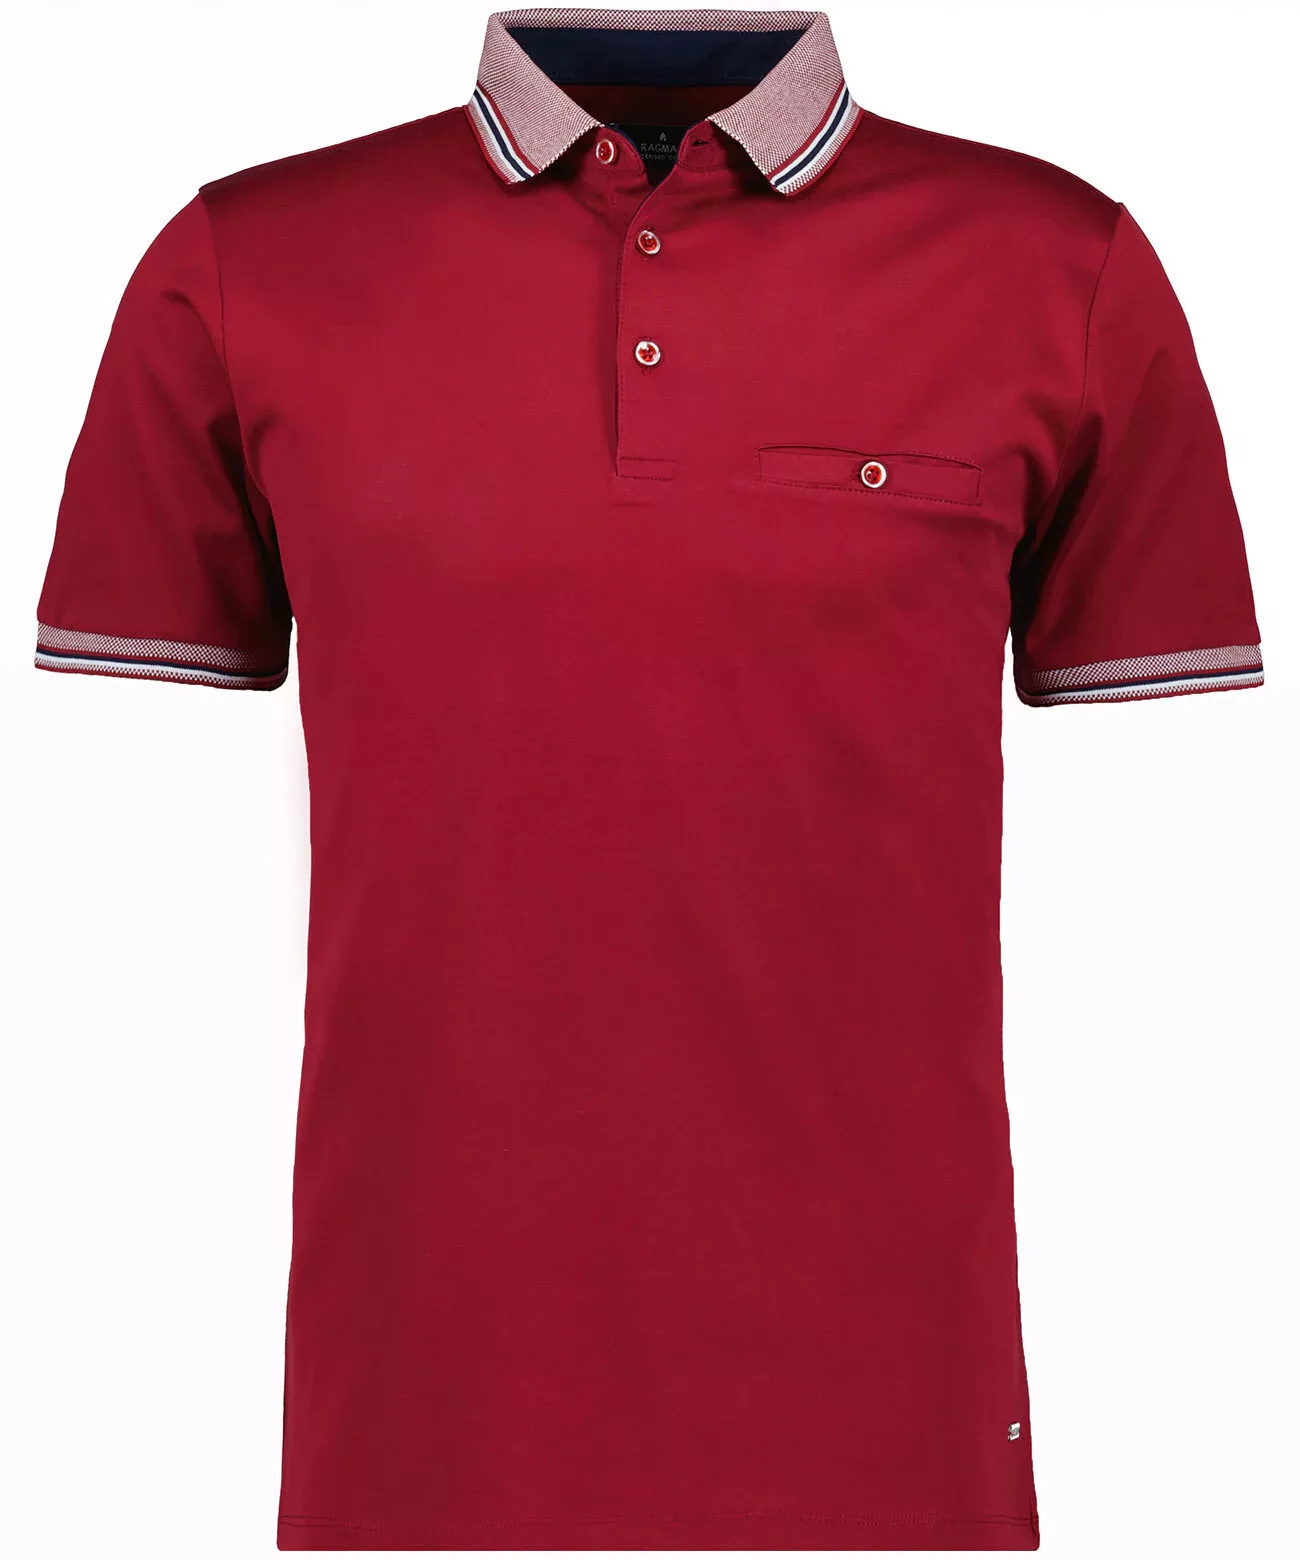 RAGMAN Poloshirt aus mercerisiertem Baumwoll-Jersey günstig online kaufen